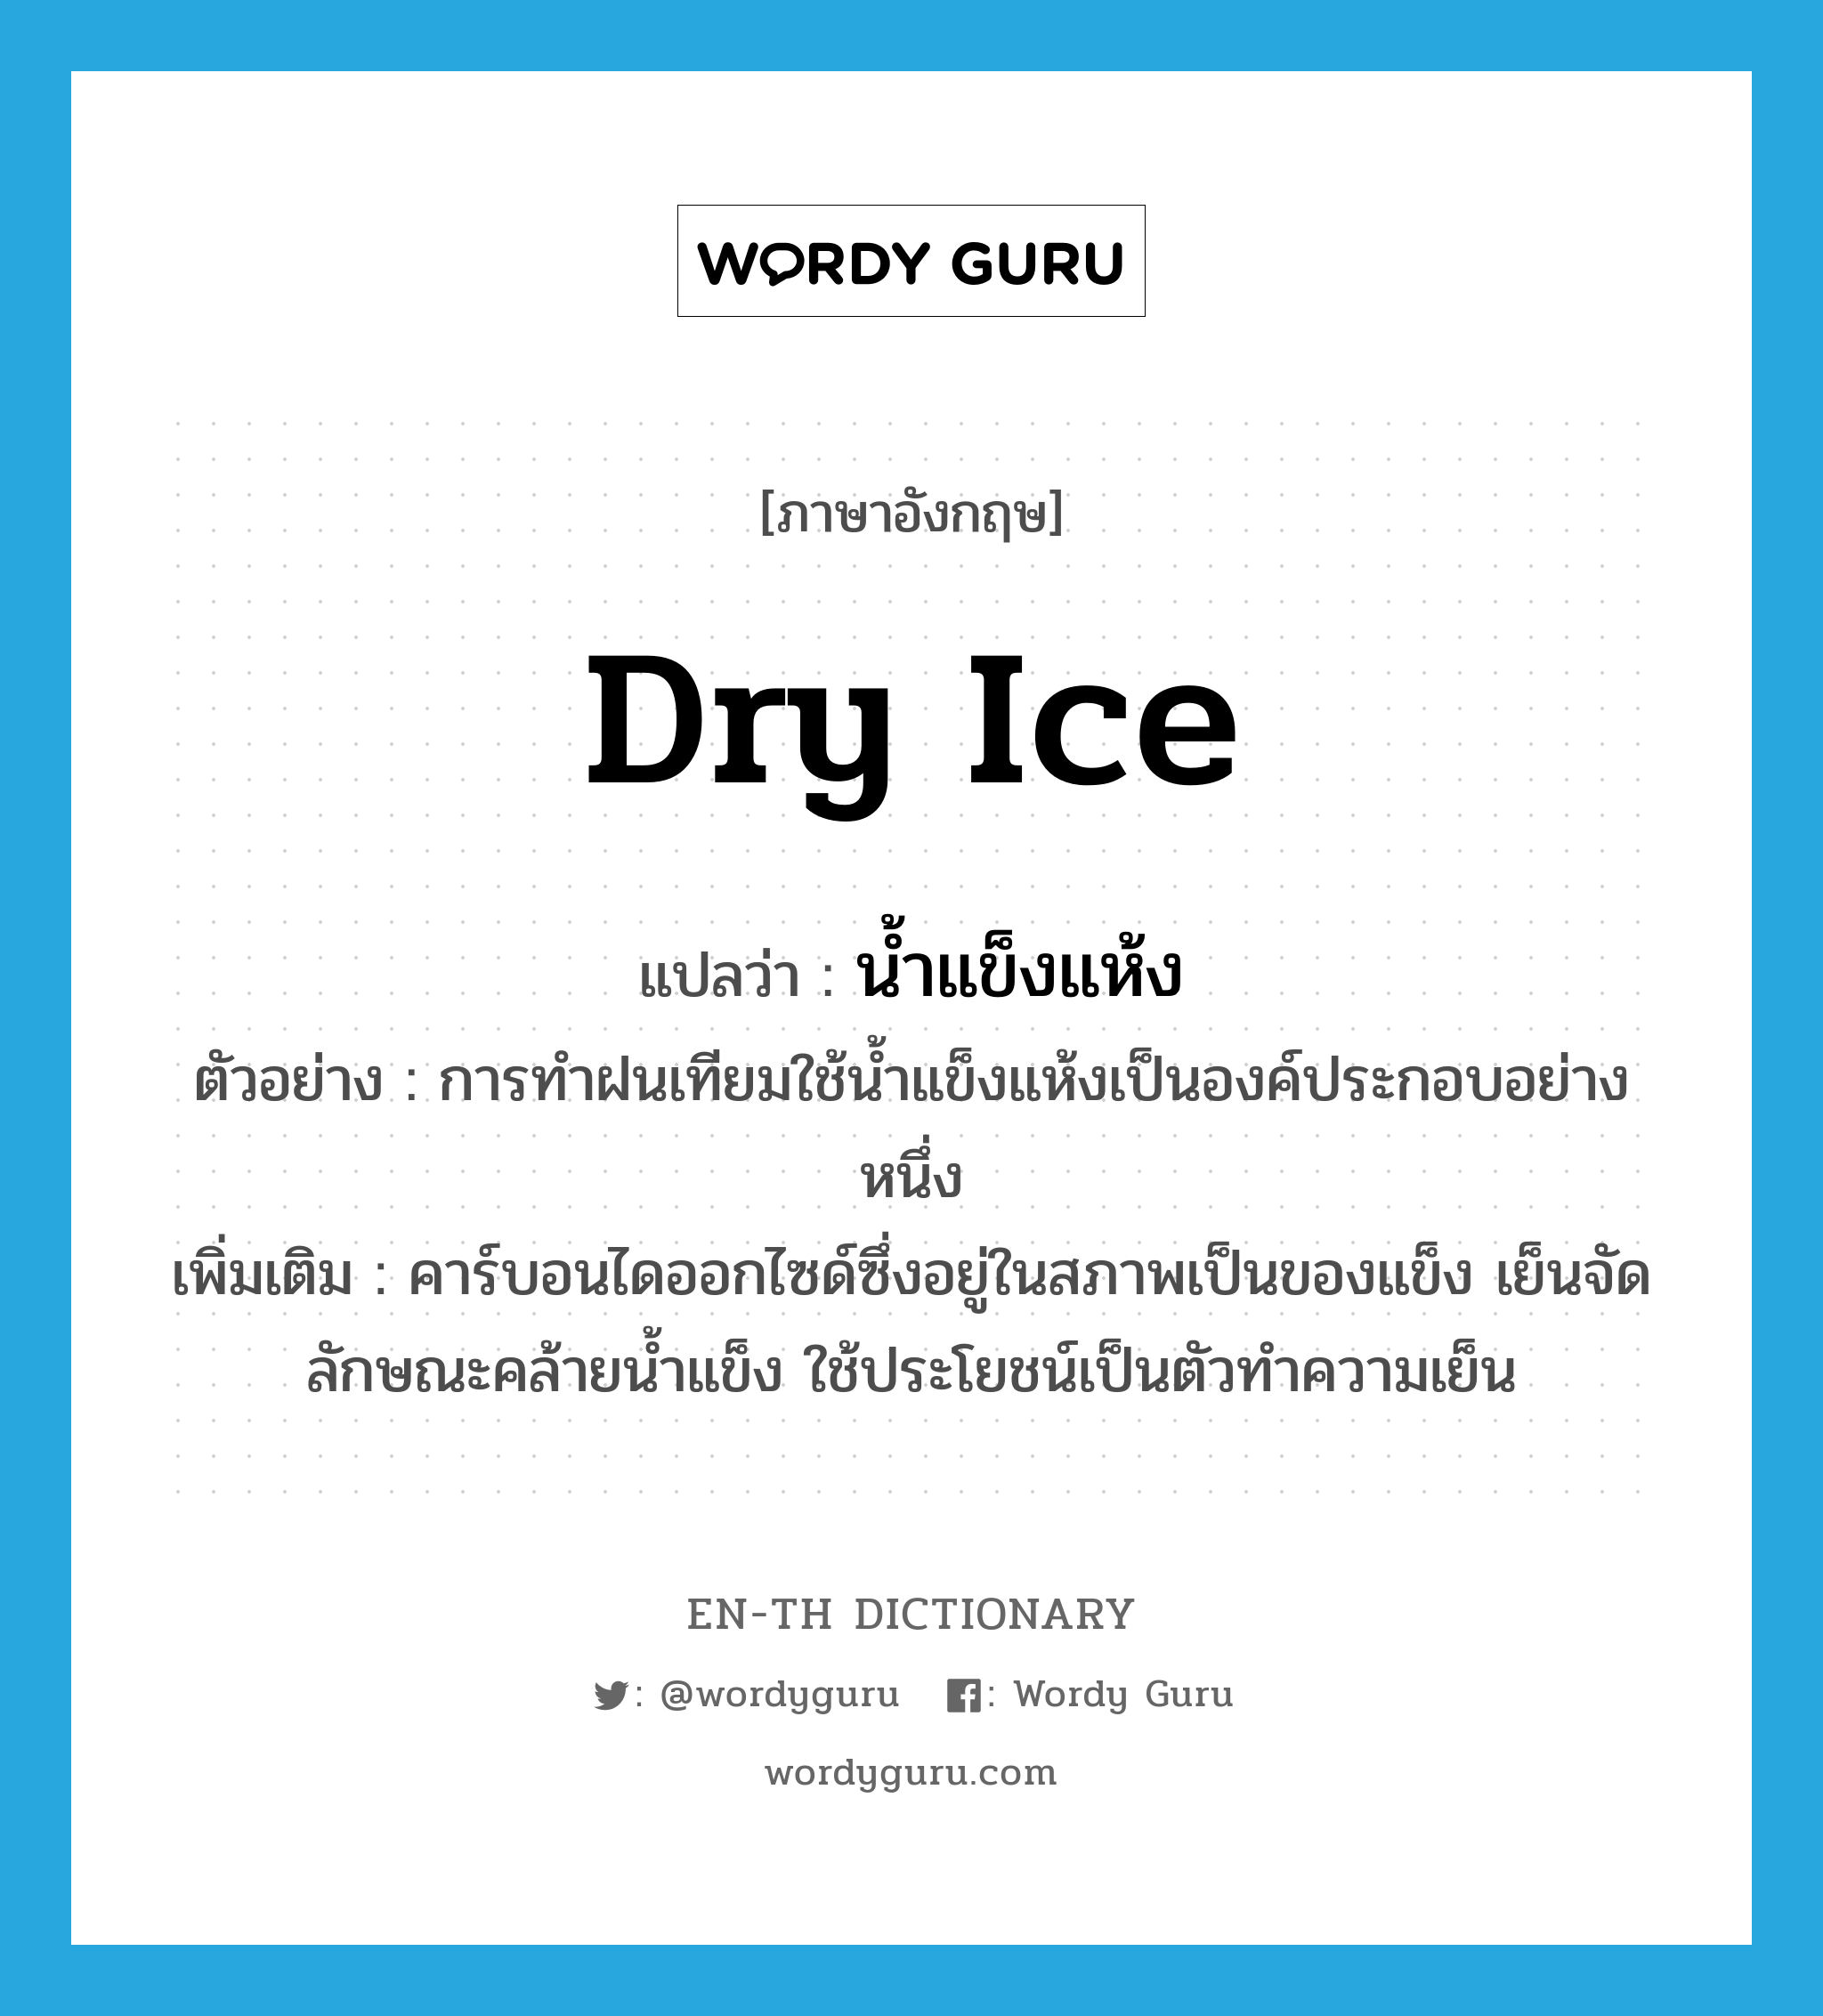 dry ice แปลว่า?, คำศัพท์ภาษาอังกฤษ dry ice แปลว่า น้ำแข็งแห้ง ประเภท N ตัวอย่าง การทำฝนเทียมใช้น้ำแข็งแห้งเป็นองค์ประกอบอย่างหนึ่ง เพิ่มเติม คาร์บอนไดออกไซด์ซึ่งอยู่ในสภาพเป็นของแข็ง เย็นจัด ลักษณะคล้ายน้ำแข็ง ใช้ประโยชน์เป็นตัวทำความเย็น หมวด N